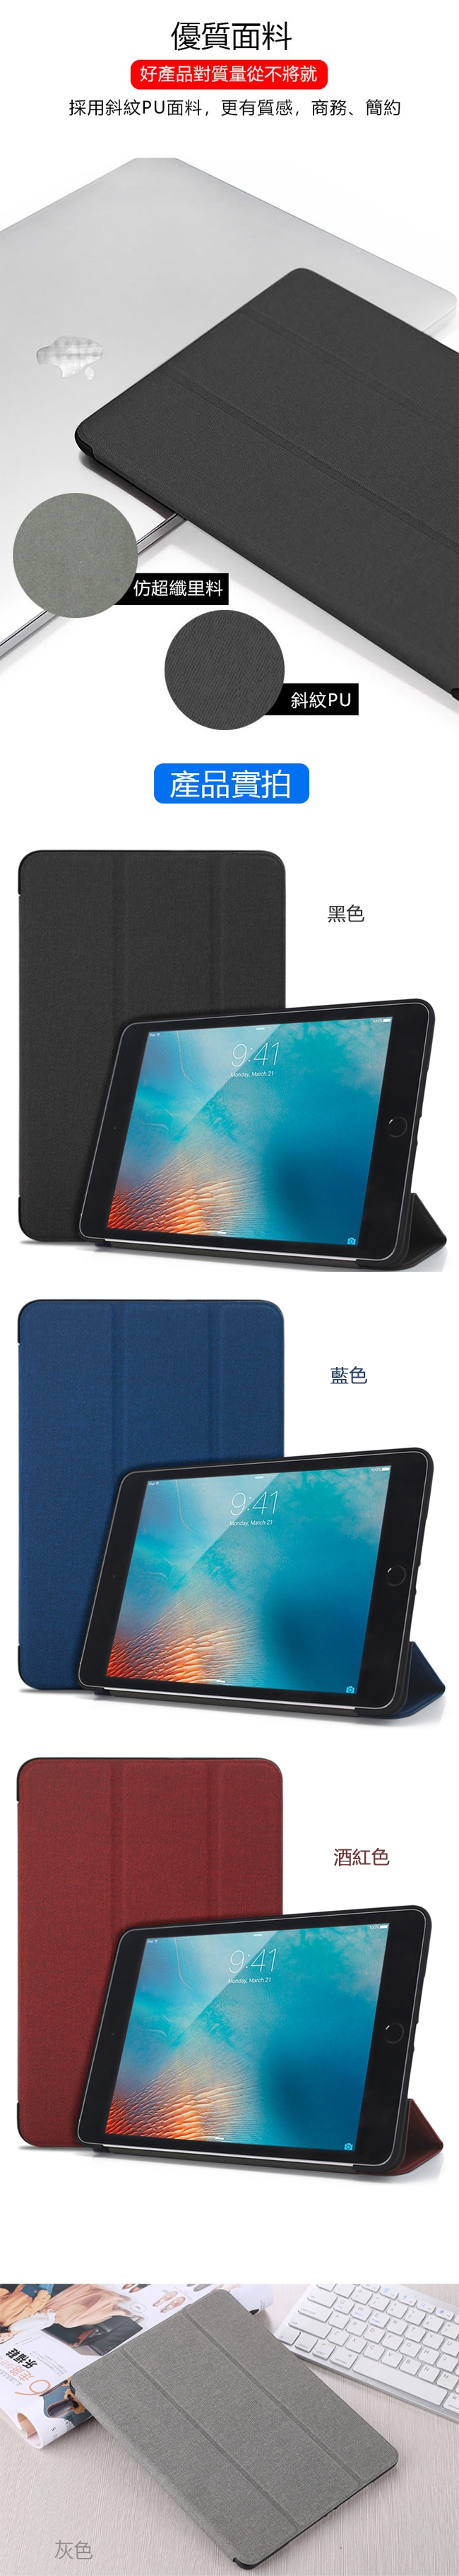 蘋果 iPad mini4 商務帆布皮套 智慧休眠 內置筆槽 保護套